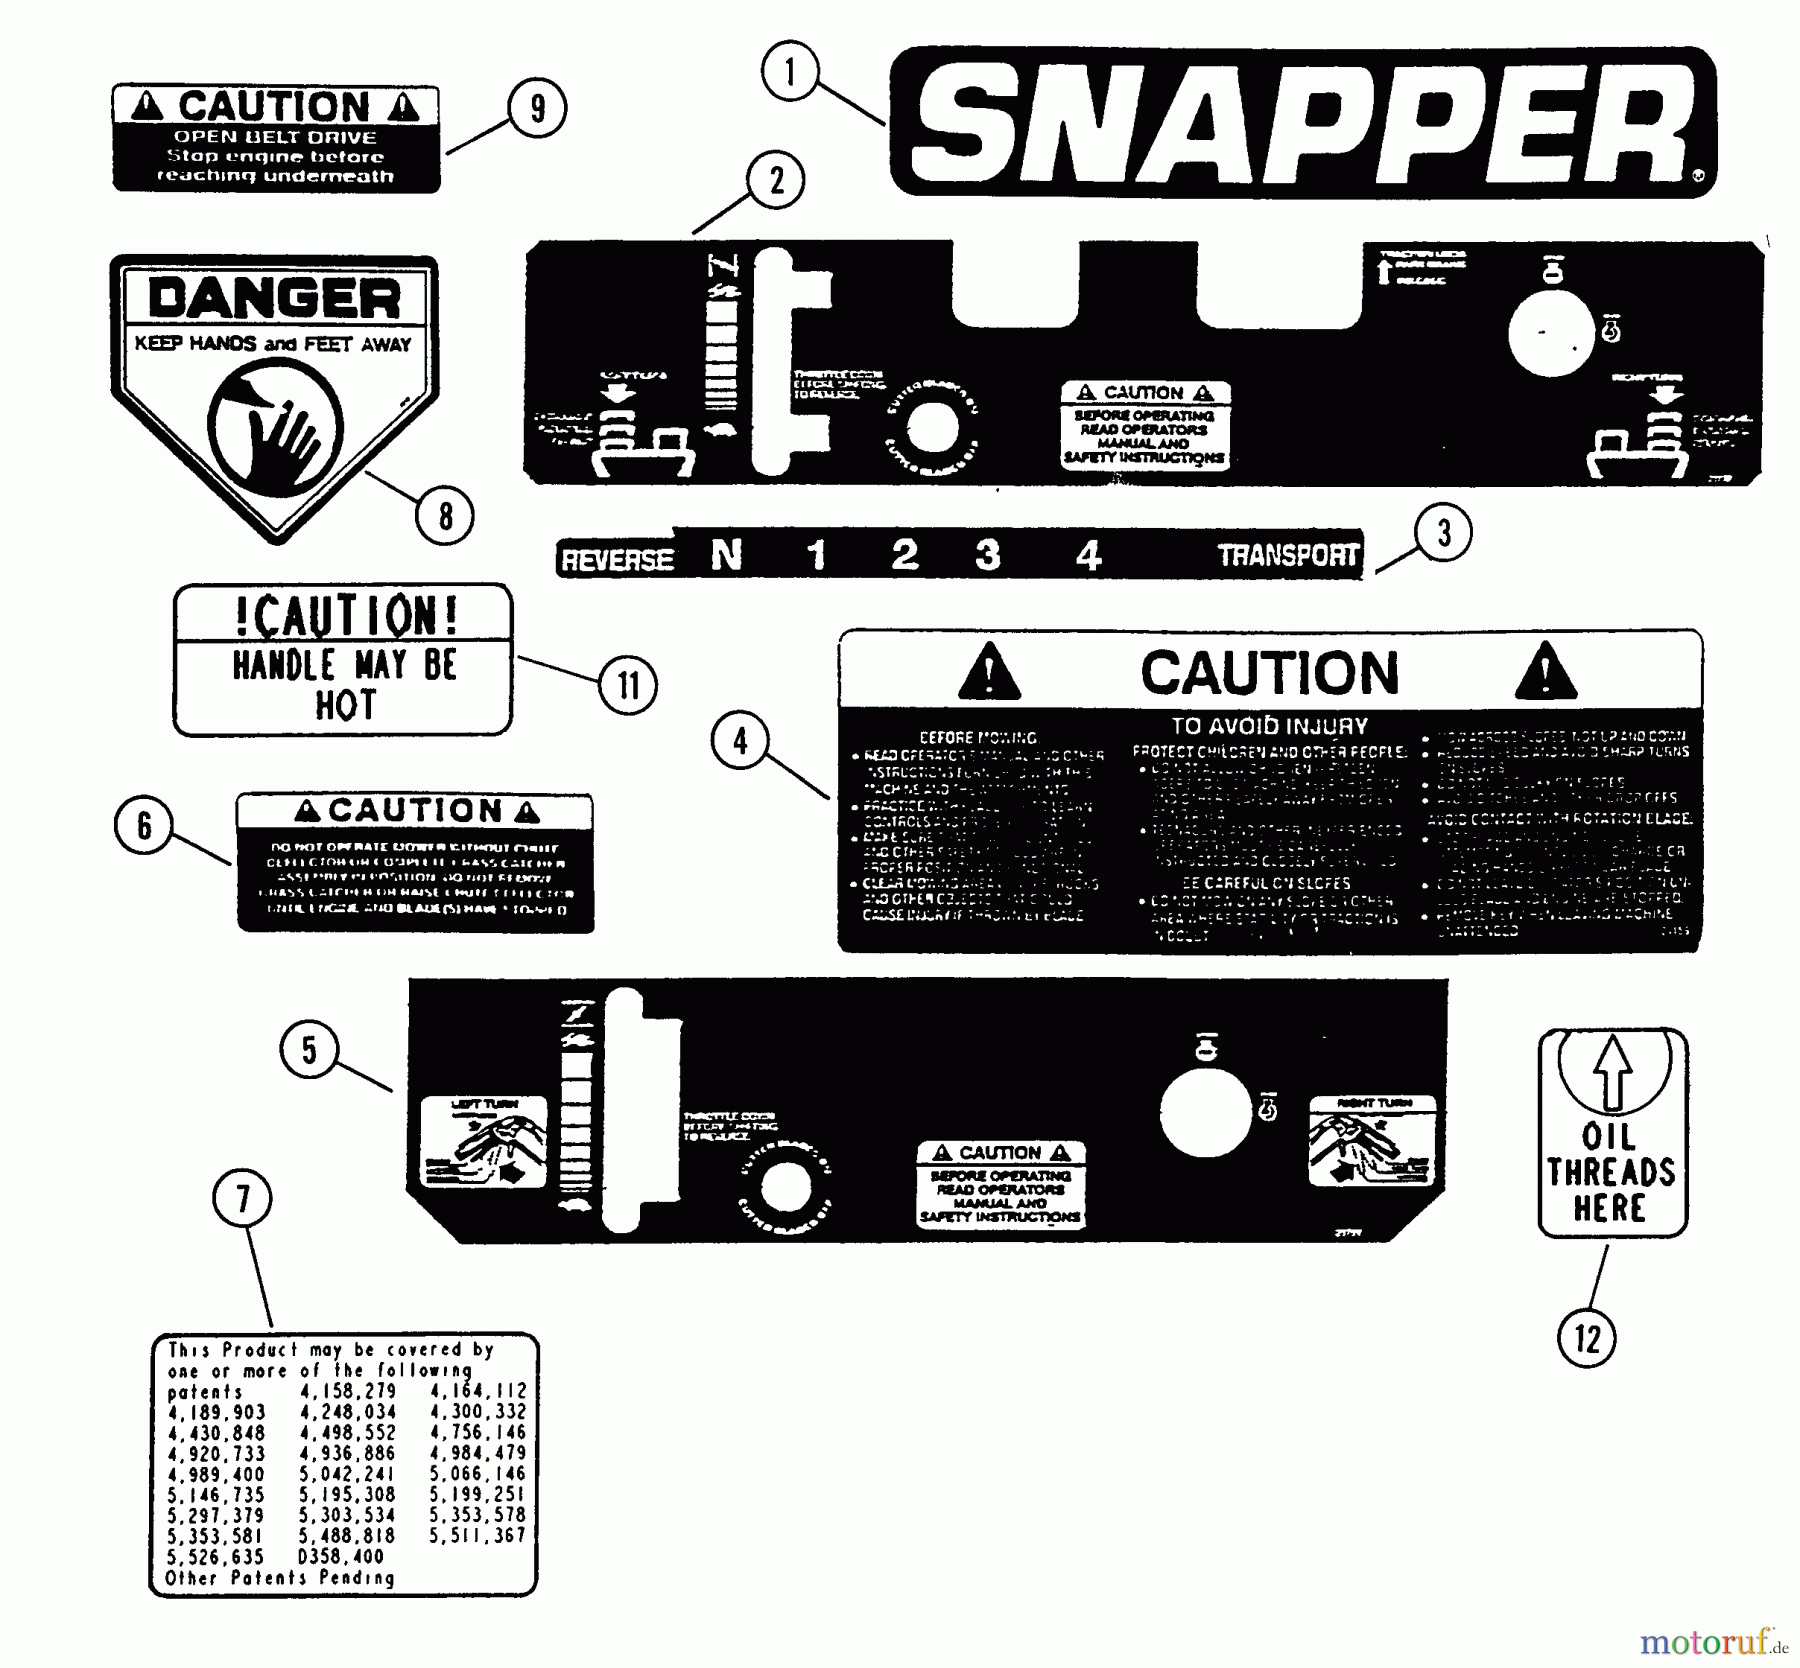  Snapper Rasenmäher für Großflächen SPP1250KW - Snapper Wide-Area Walk-Behind Mower, 12.5 HP, Gear Drive, Pistol Grip, Series 0 Decals